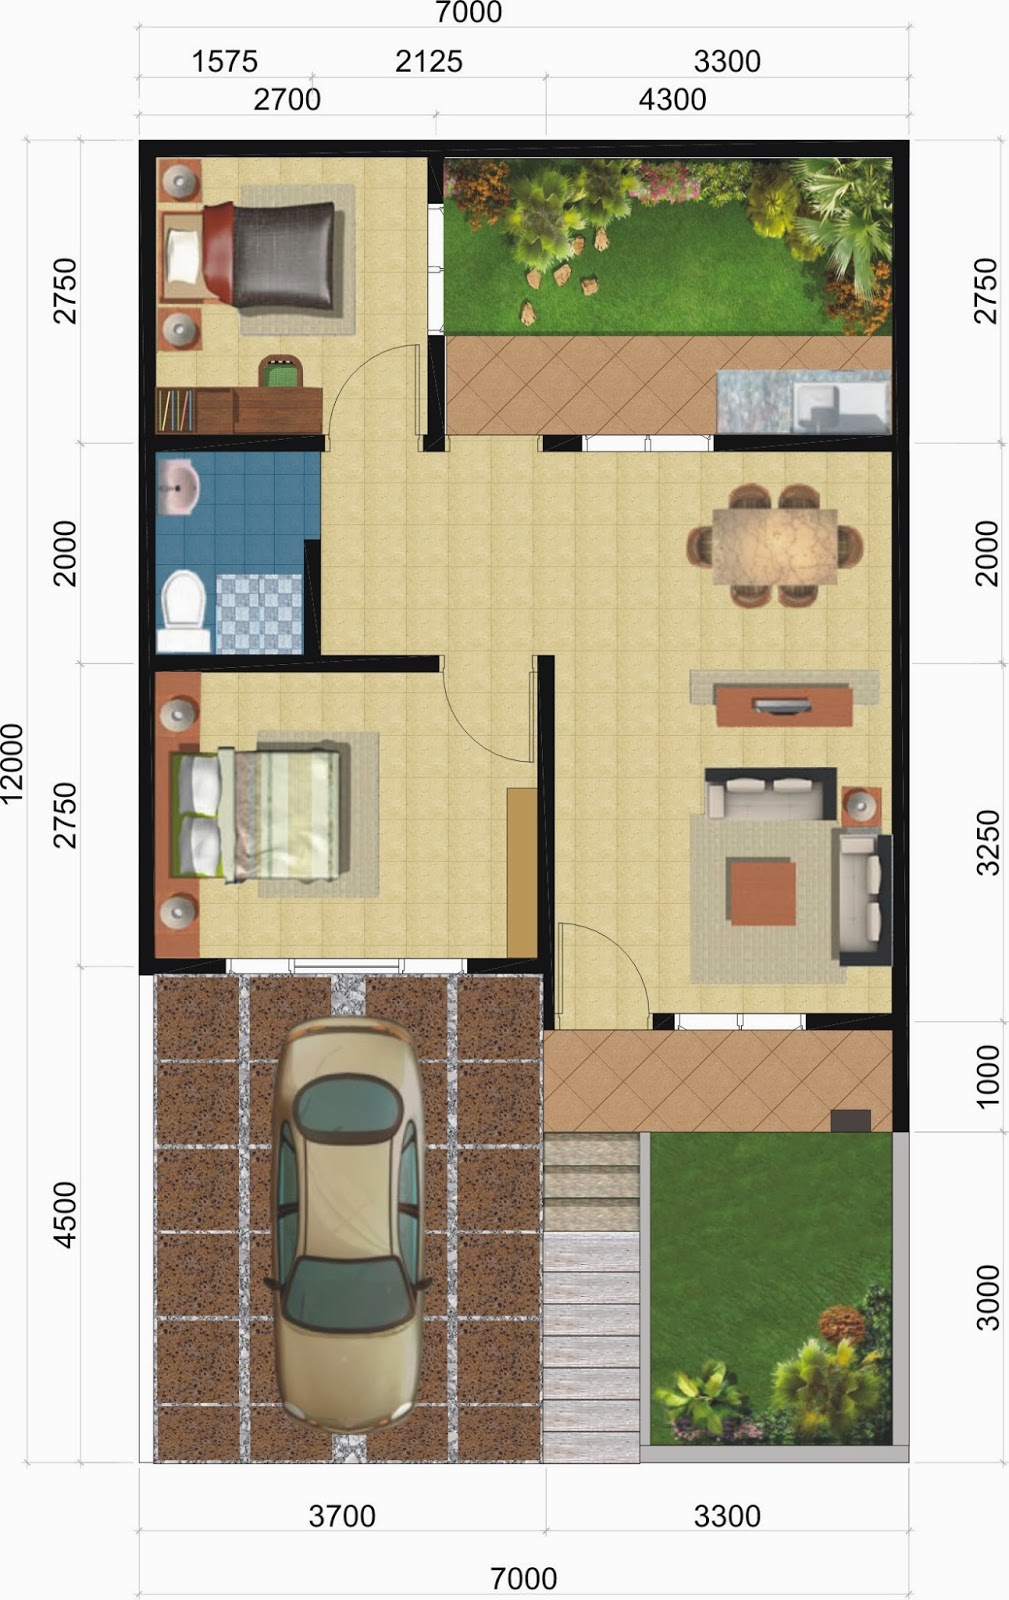 Gambar Desain Rumah Minimalis 1 Lantai Ukuran 5x12 Terbaru Desain